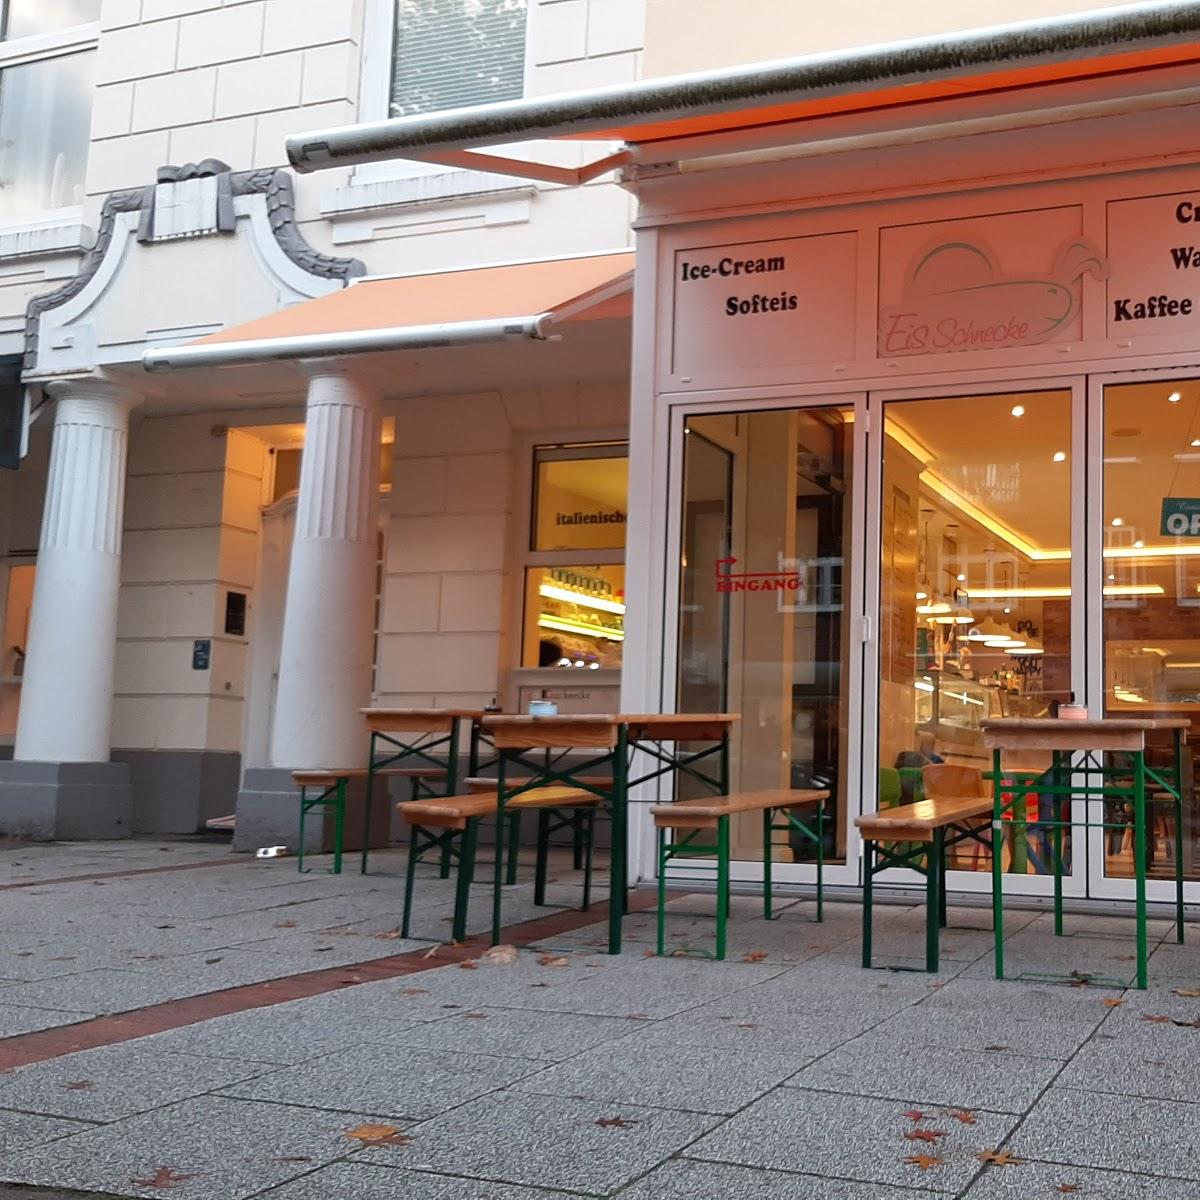 Restaurant "EisSchnecke" in Hamburg